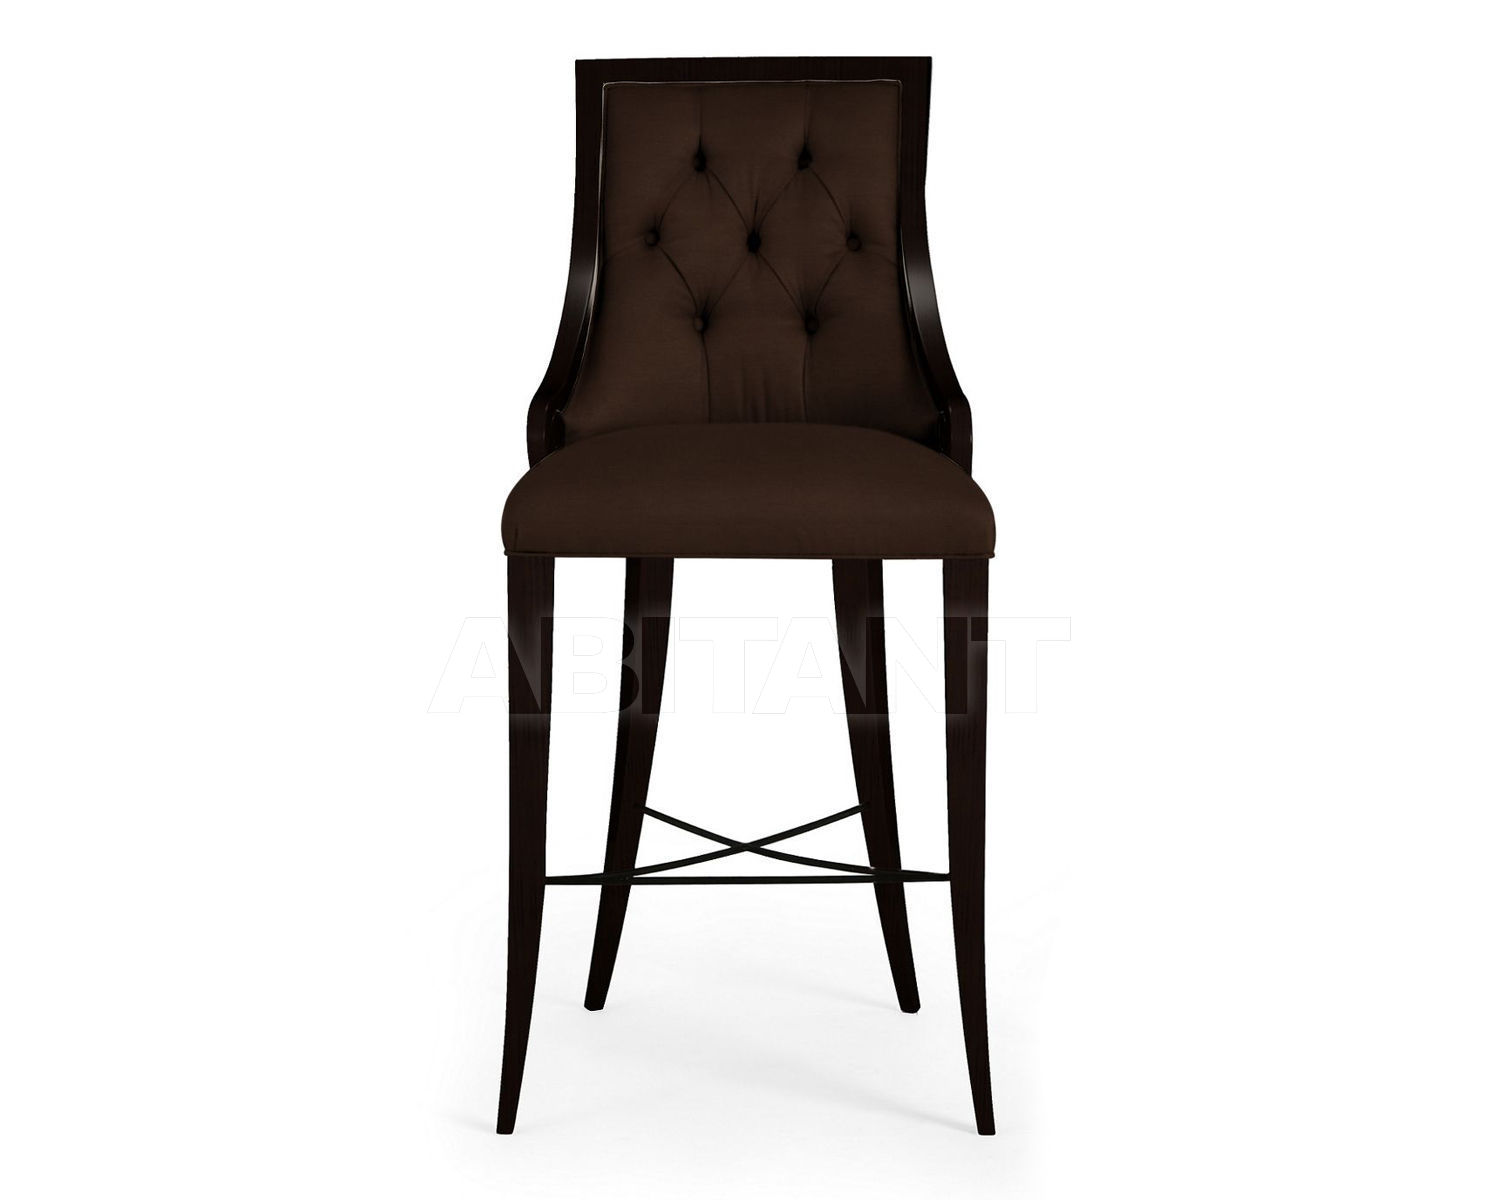 Buy Bar stool Megeve Christopher Guy 2014 60-0026-CC Mahogany